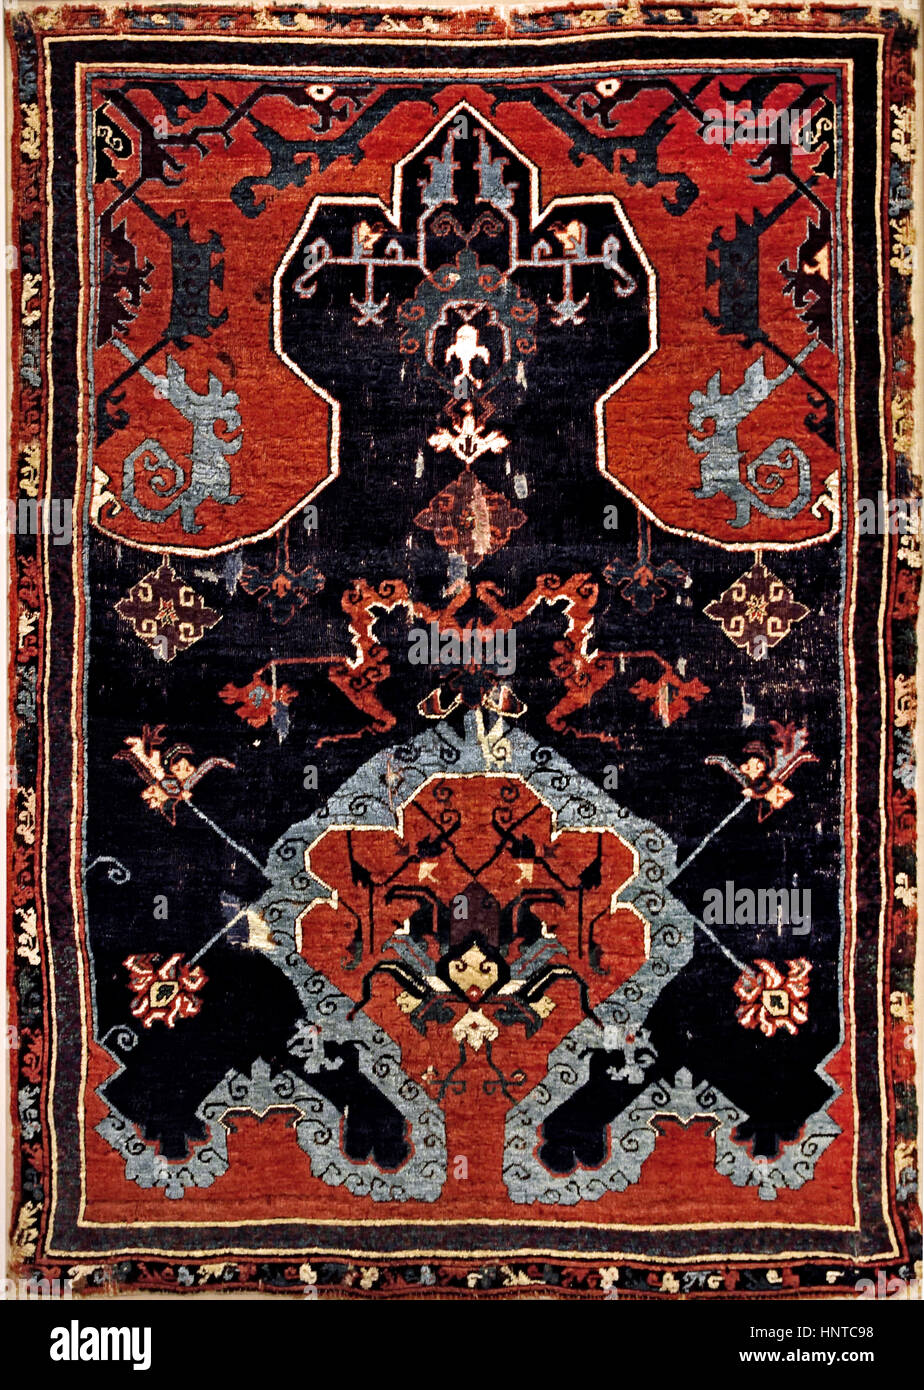 Bande de nuage tapis anatoliens Ushak 1871 Turquie ( l'Impératrice Elisabeth d'Autriche (Sissi) a été décrit sur ce tapis en 1882 ( peintre Heinrich von Angeli ) Banque D'Images